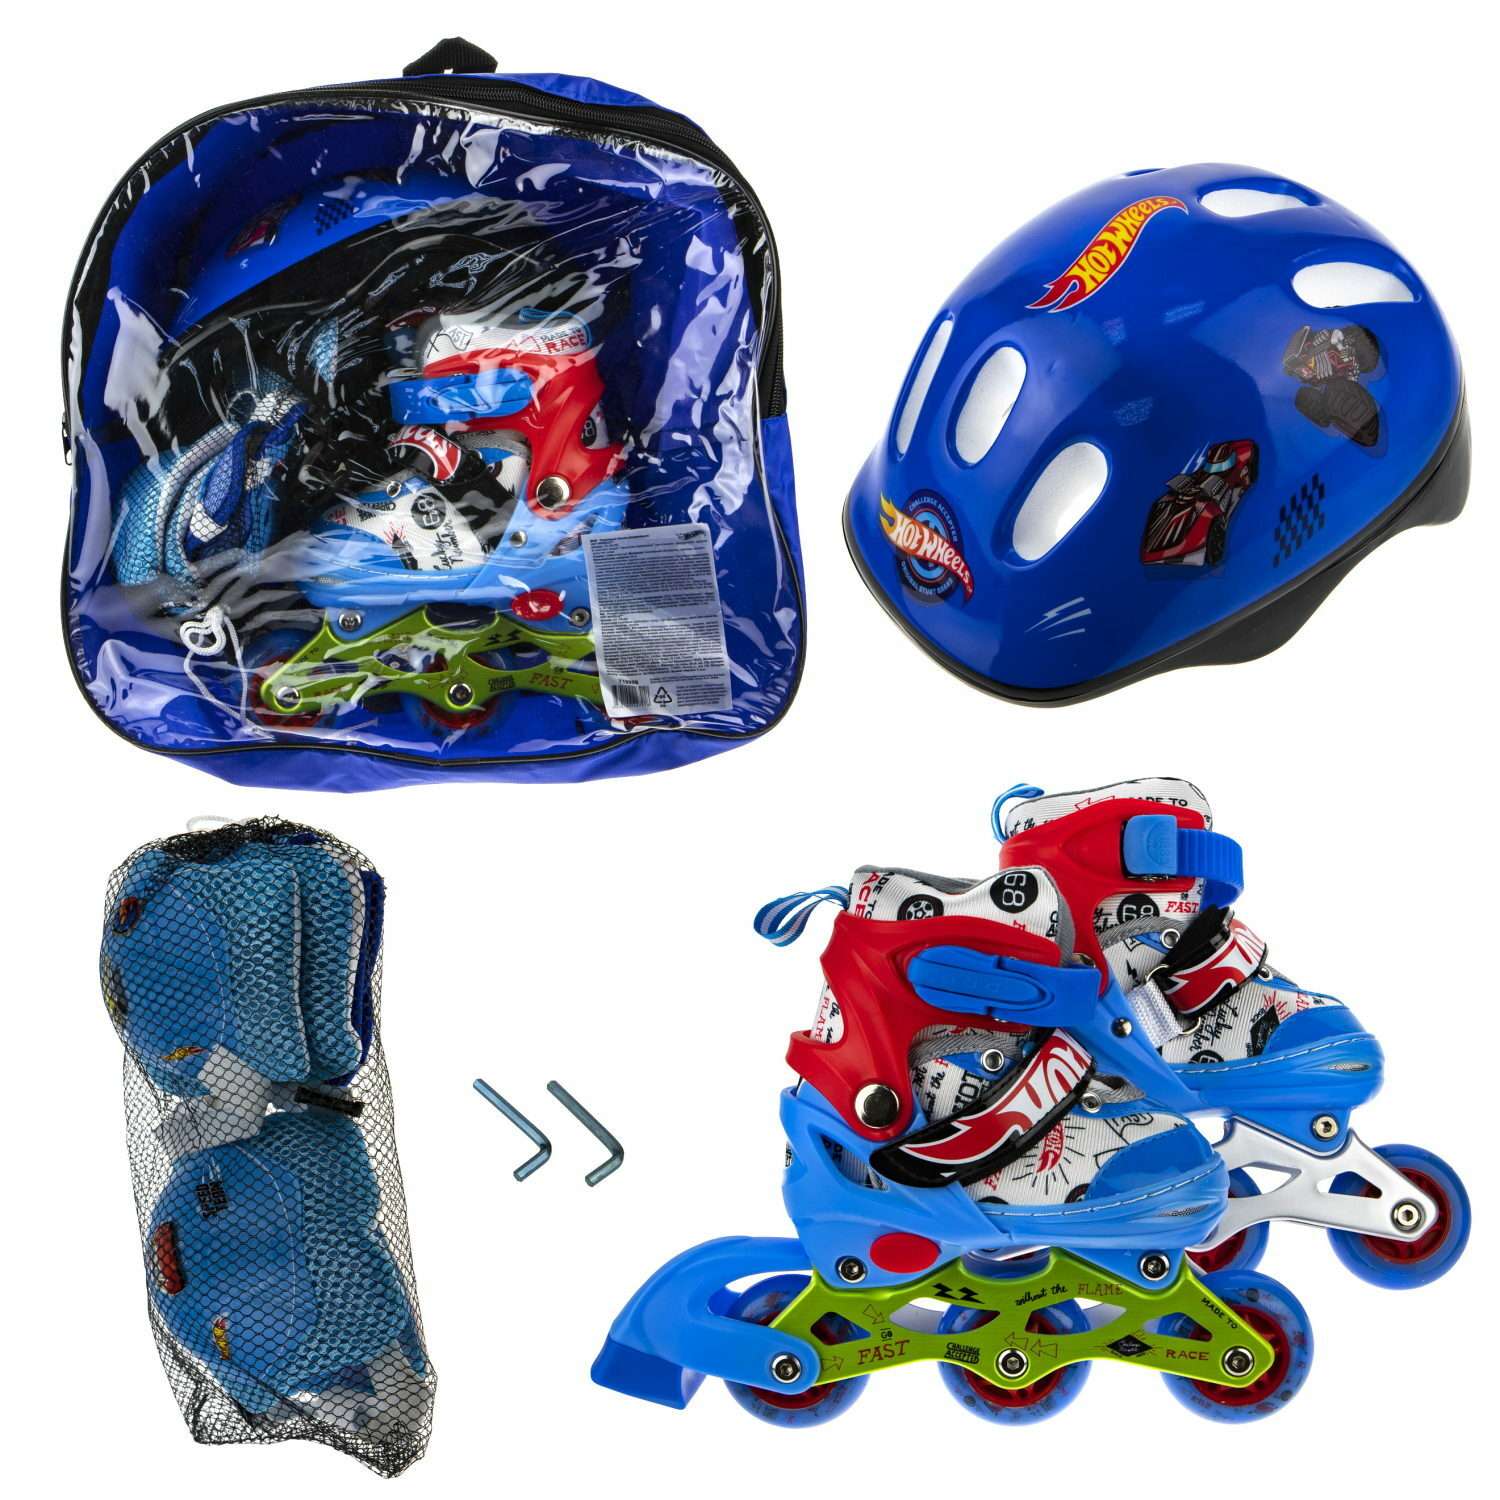 Коньки роликовые Hot Wheels со светом в комплекте с защитой и шлемом M 34-37 - фото 6